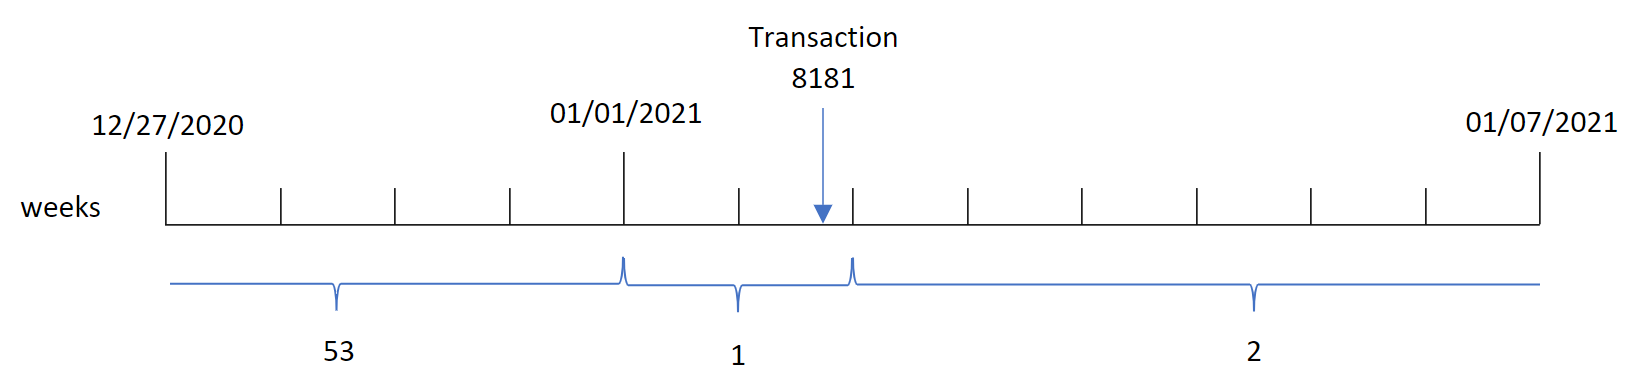 显示 weekyear() 函数的图标识交易 8181 发生在第 1 周，并返回该周的年份，即 2021。